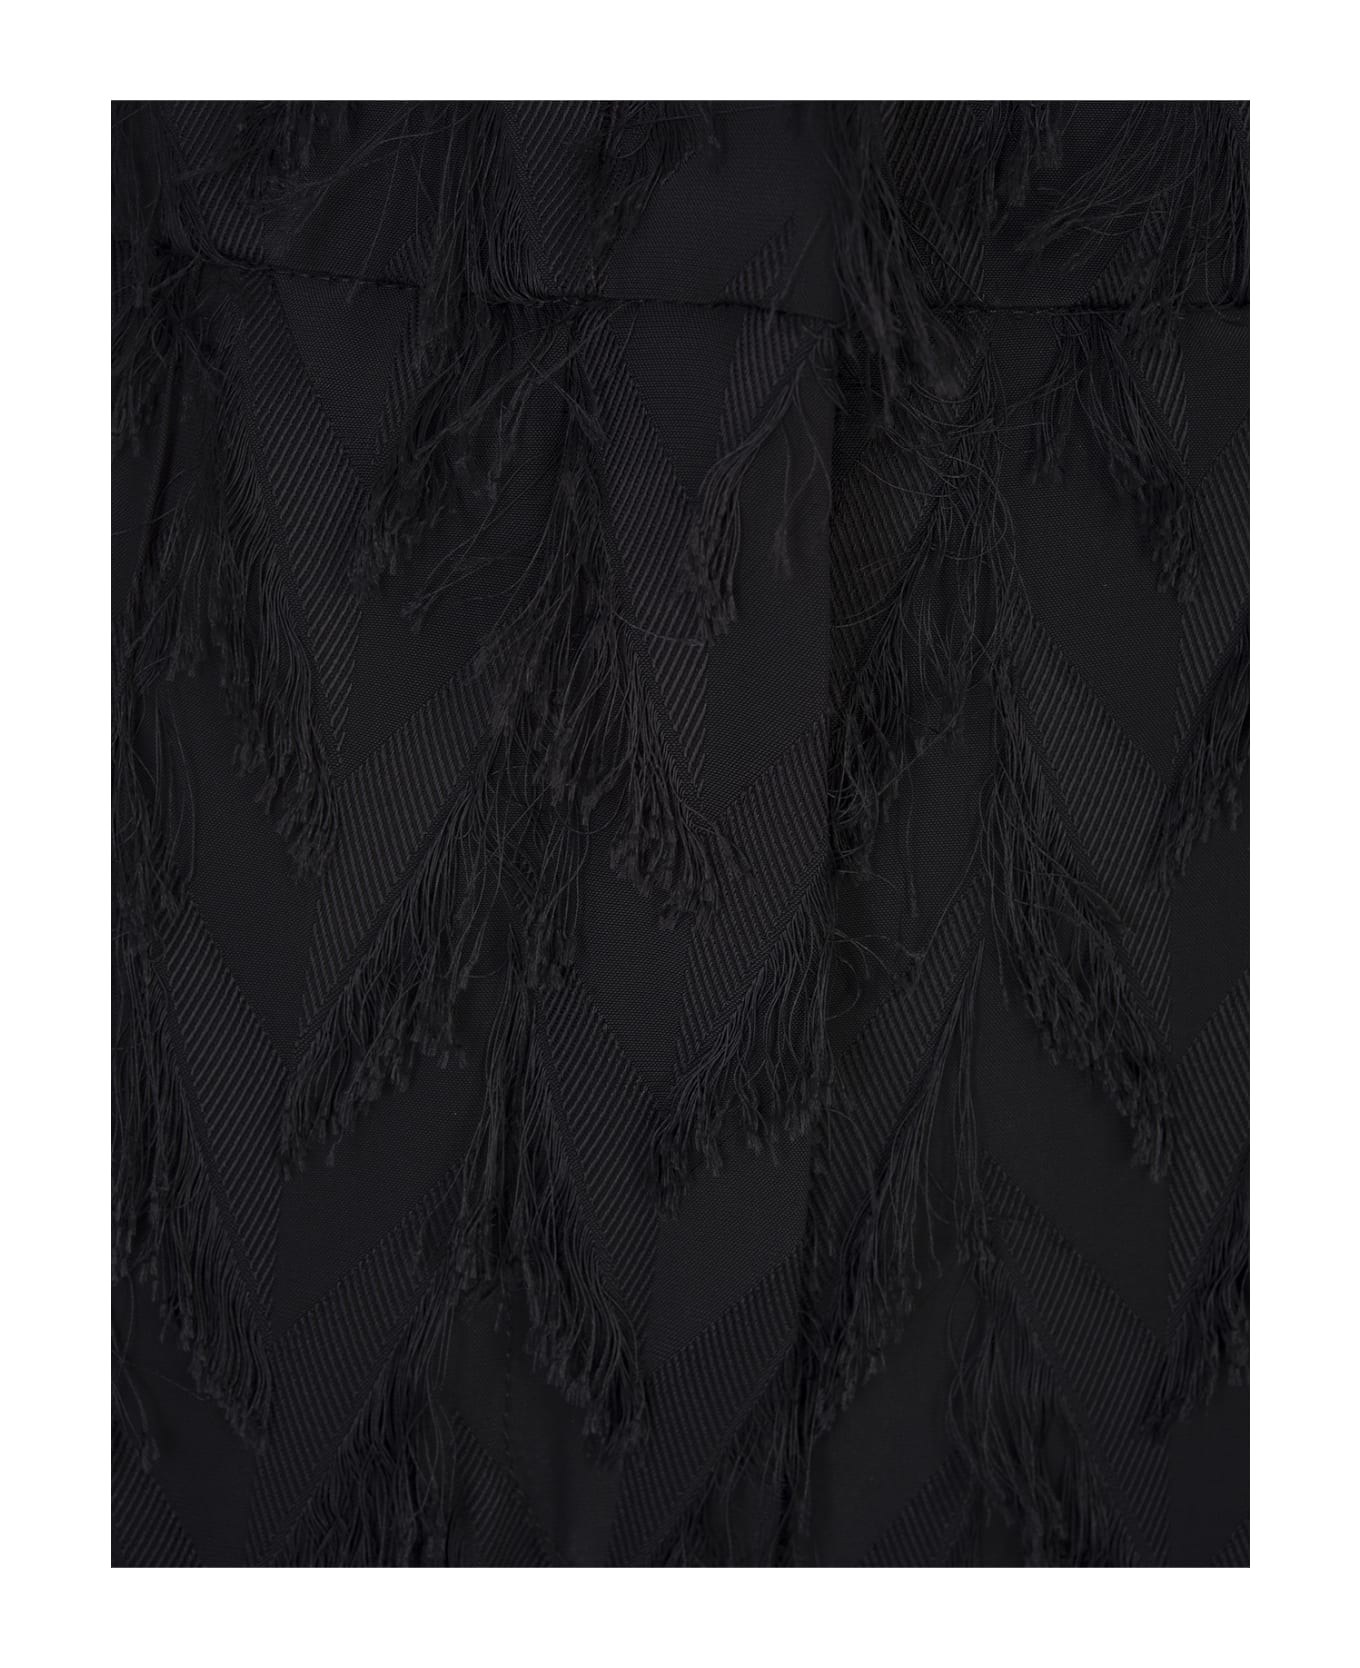 MSGM Wide Black Trousers In Fluid Viscose Fil Coupè Fabric - Black